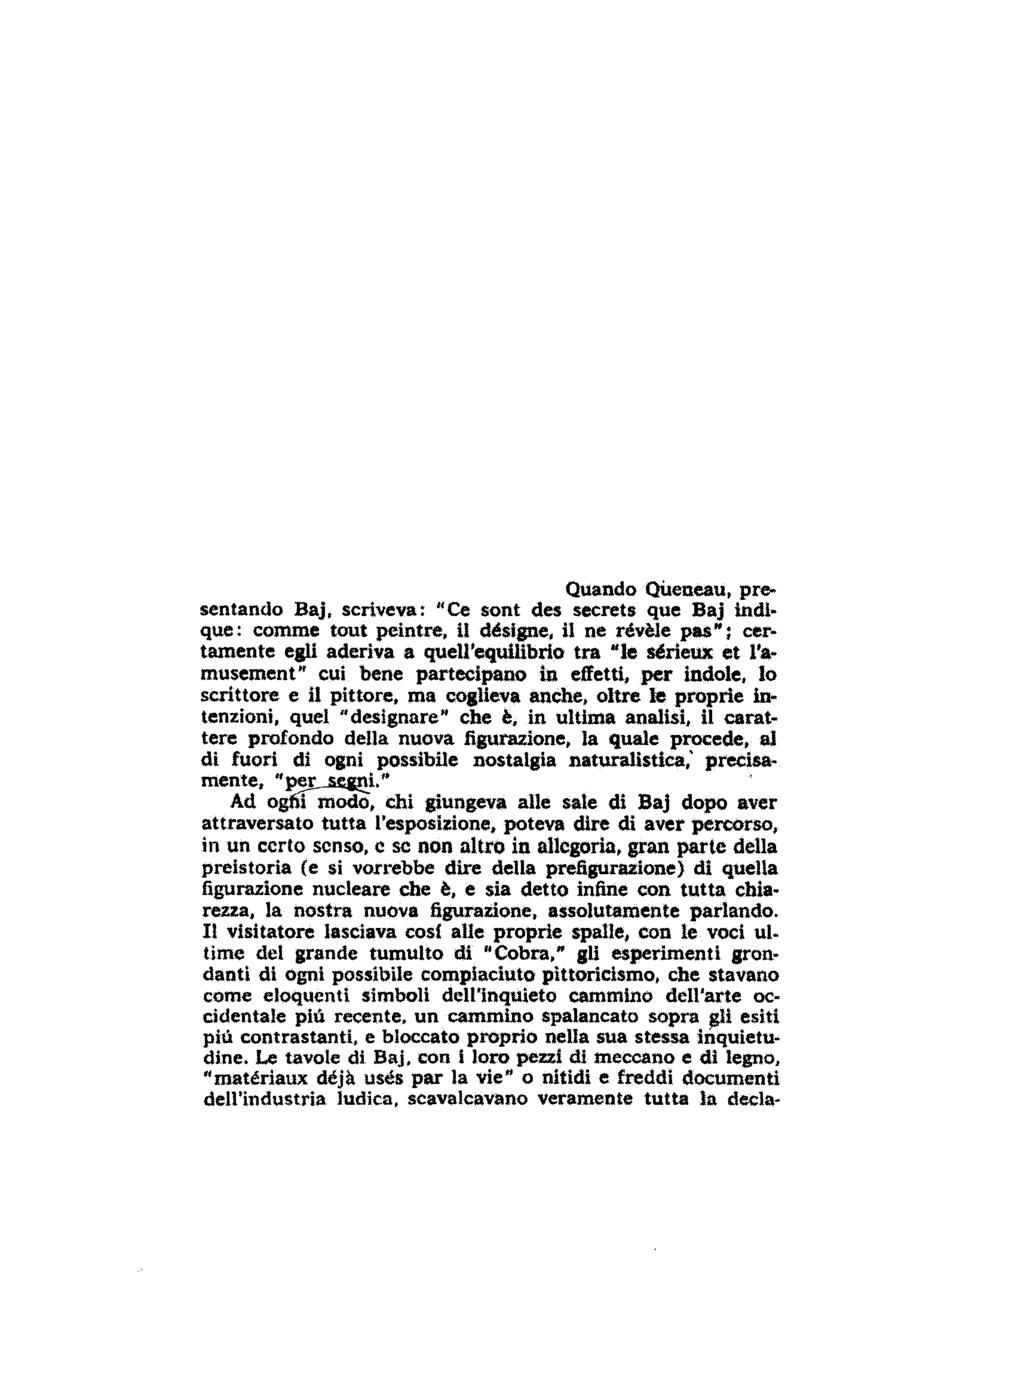 Edoardo Sanguineti da: Per una nuova figurazione in "il verri", 1963 (3) [.